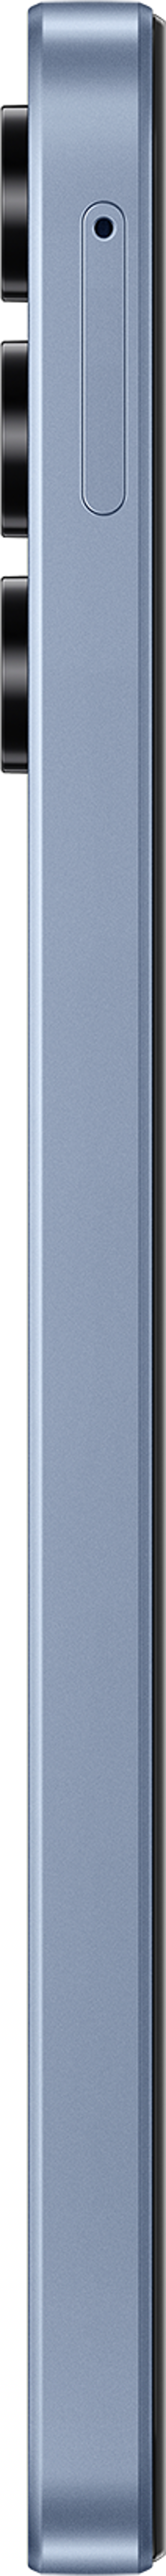 Samsung Galaxy A15 5G 128GB Hybridi-Dual SIM Sininen